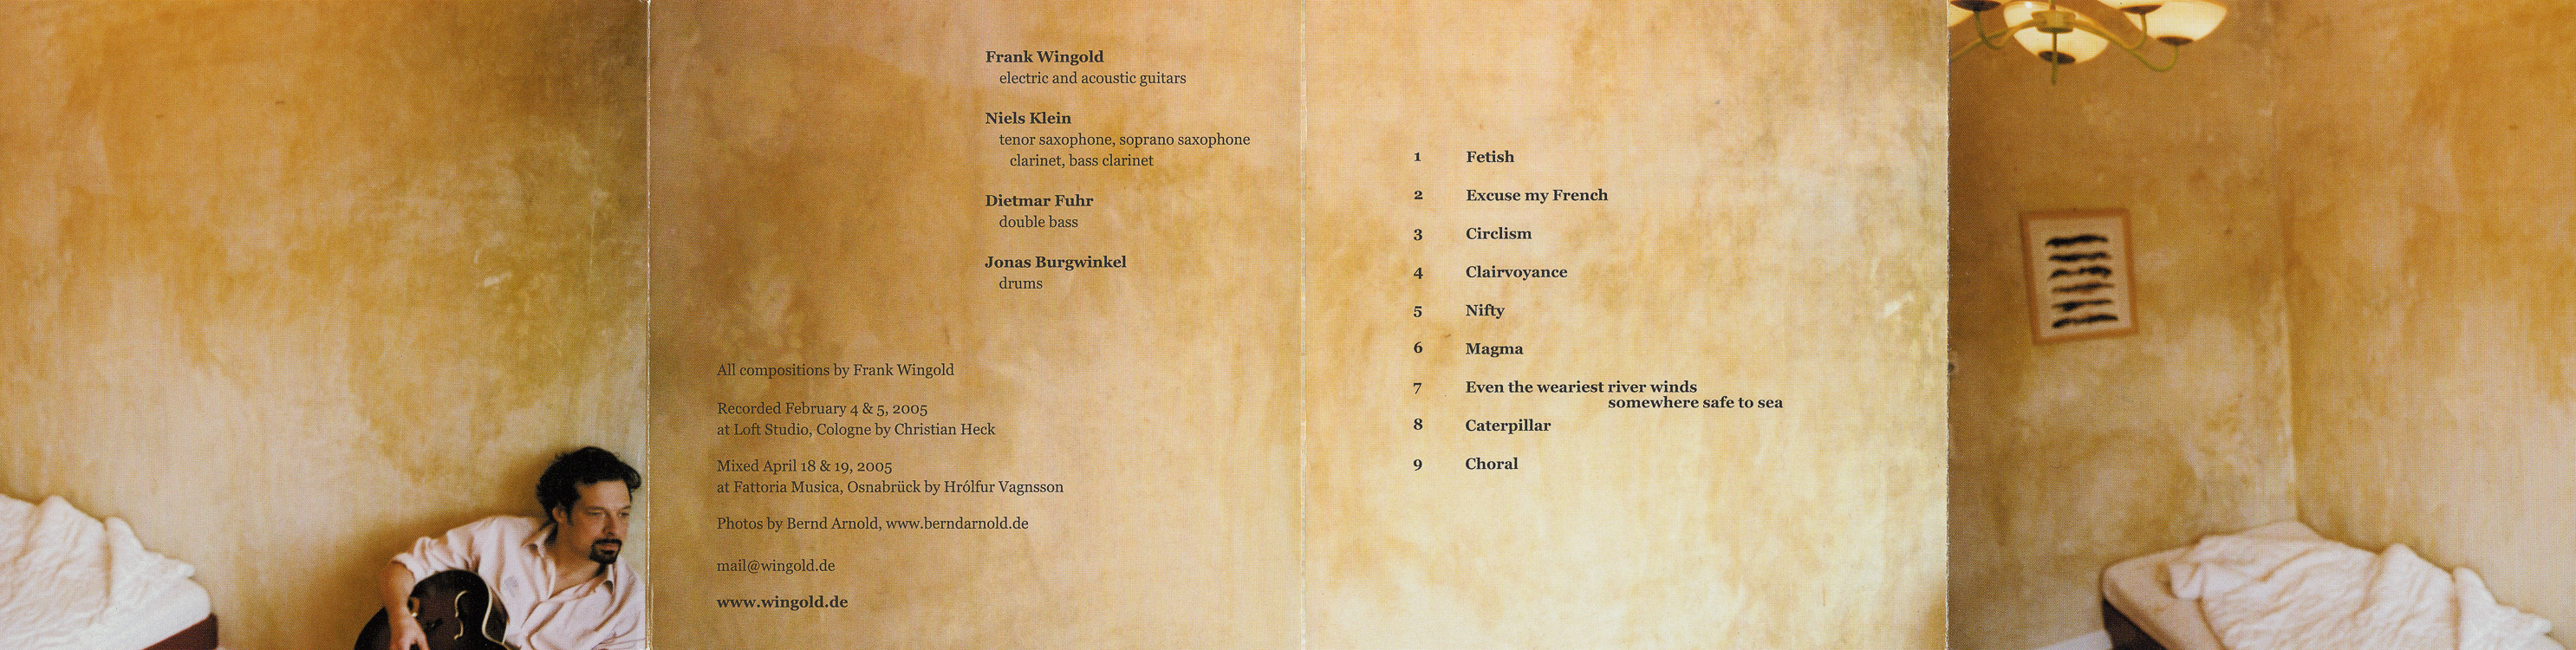 Booklet (innen) der CD Clairvoyance von dem Jazzgitarristen Frank Wingold